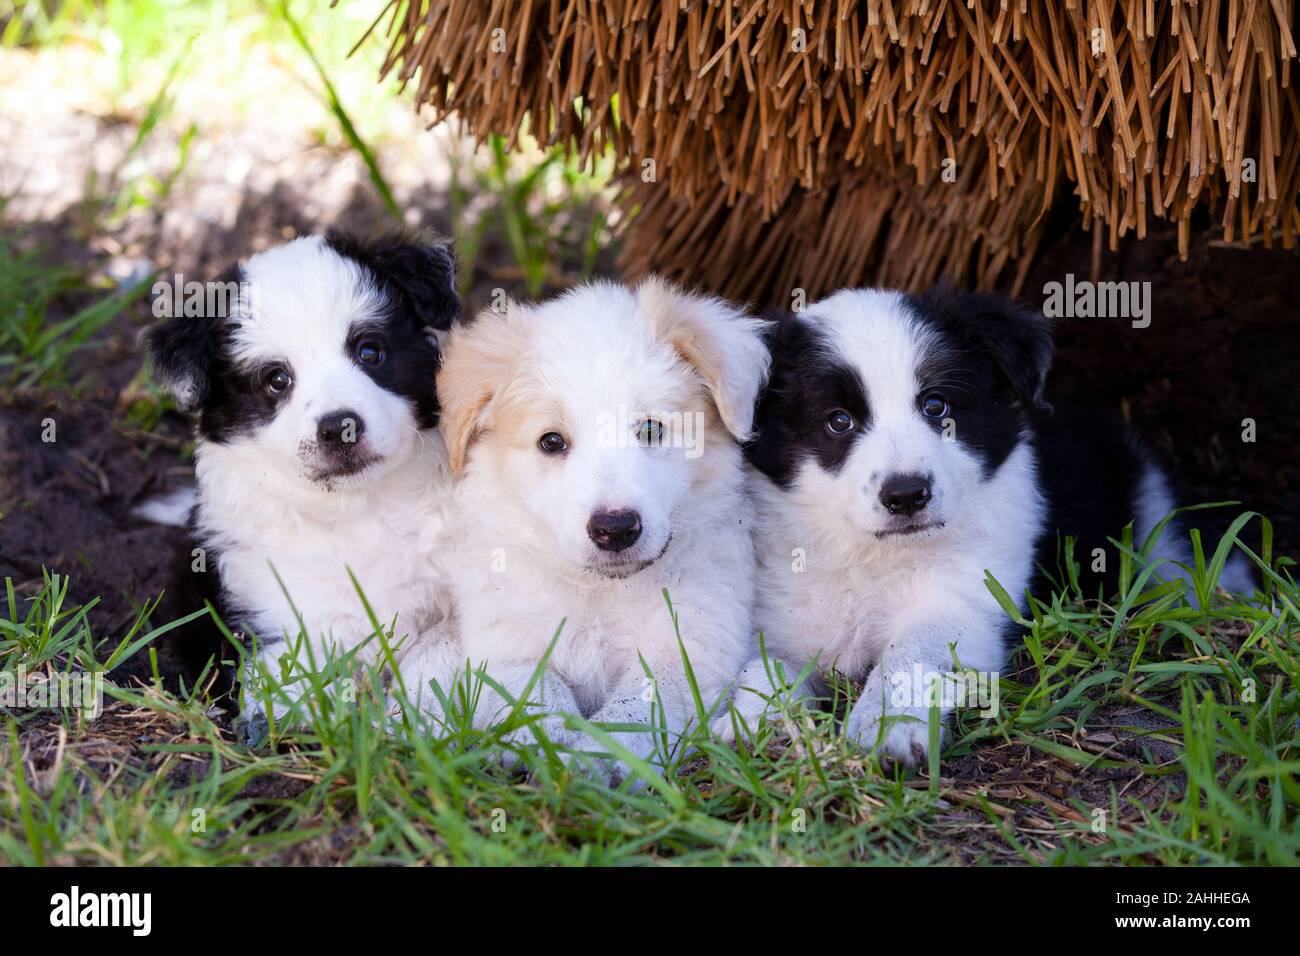 Drei Border Collie Welpen, zwei schwarze und weiße und einen roten und weißen, süßen im Gras. Stockfoto